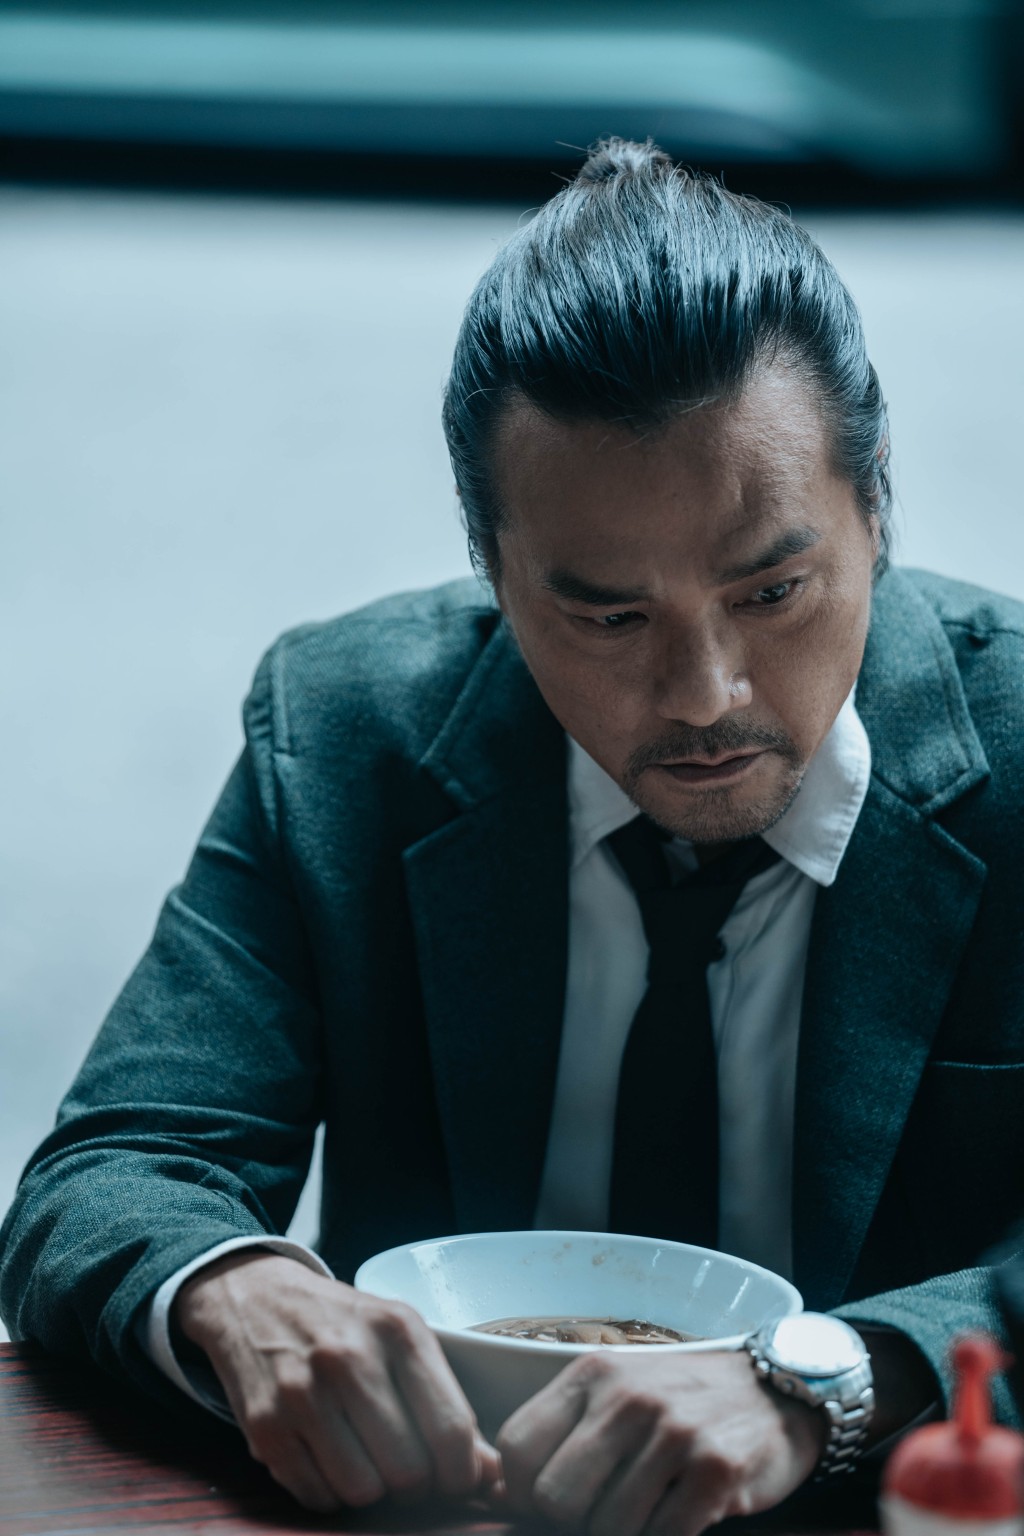 刘德华、林家栋、刘雅瑟等主演犯罪动作电影《潜行》将于1月11日上映。